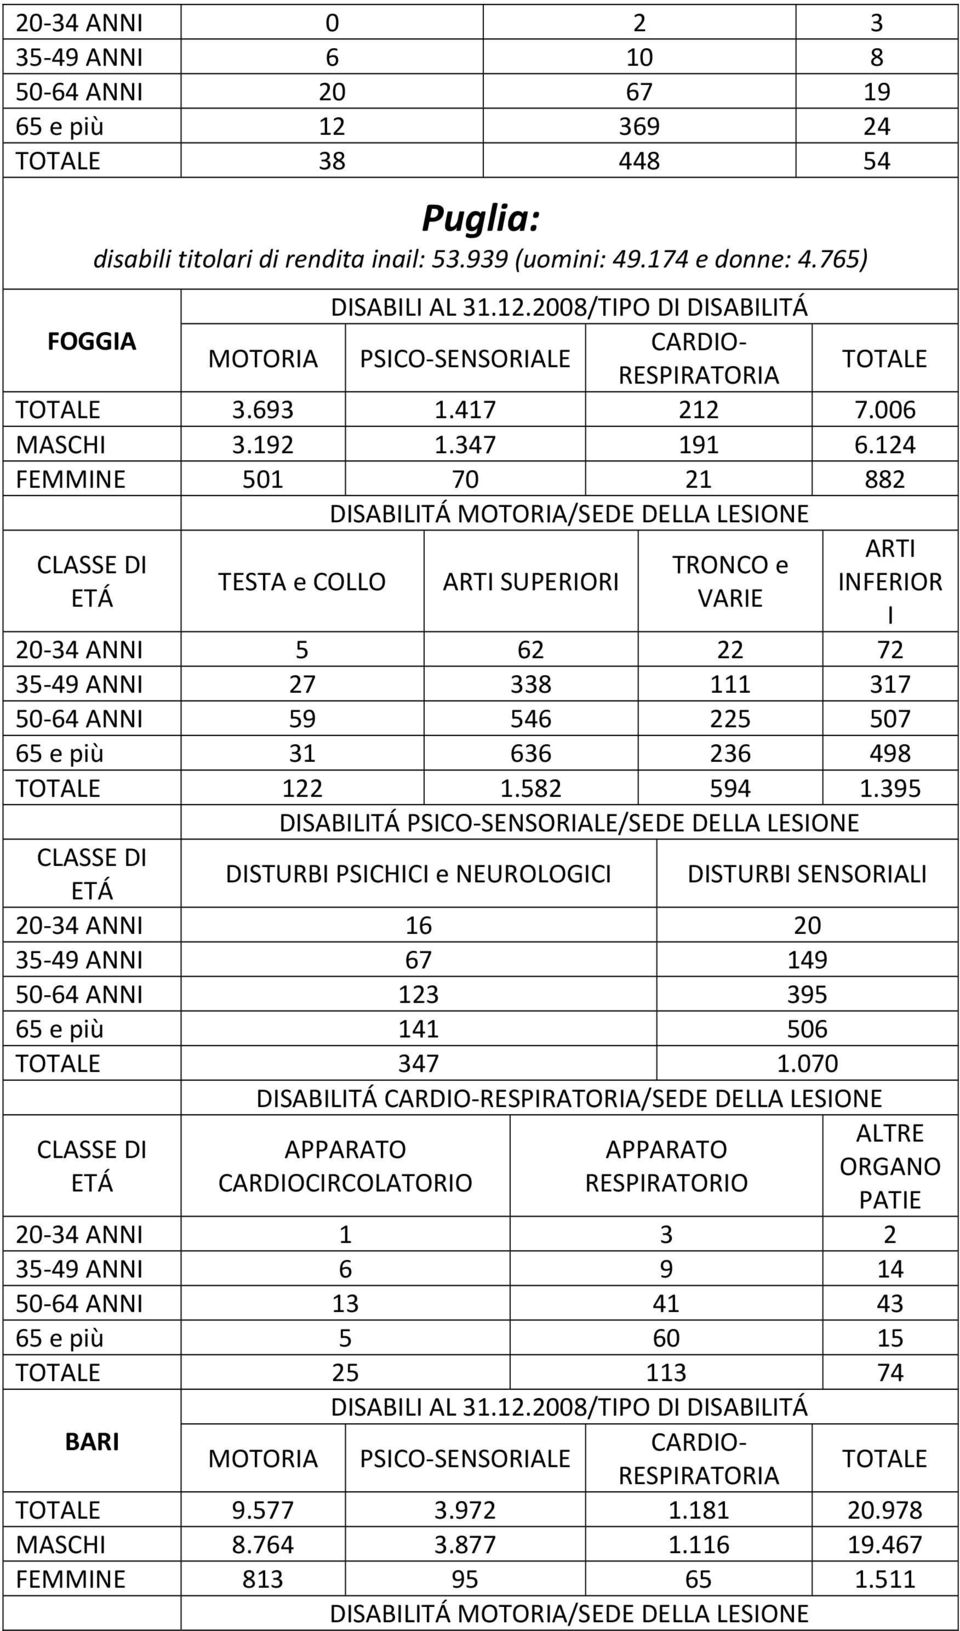 2008/TIPO DI DISABILITÁ FOGGIA CARDIO MOTORIA PSICO SENSORIALE RESPIRATORIA TOTALE TOTALE 3.693 1.417 212 7.006 MASCHI 3.192 1.347 191 6.